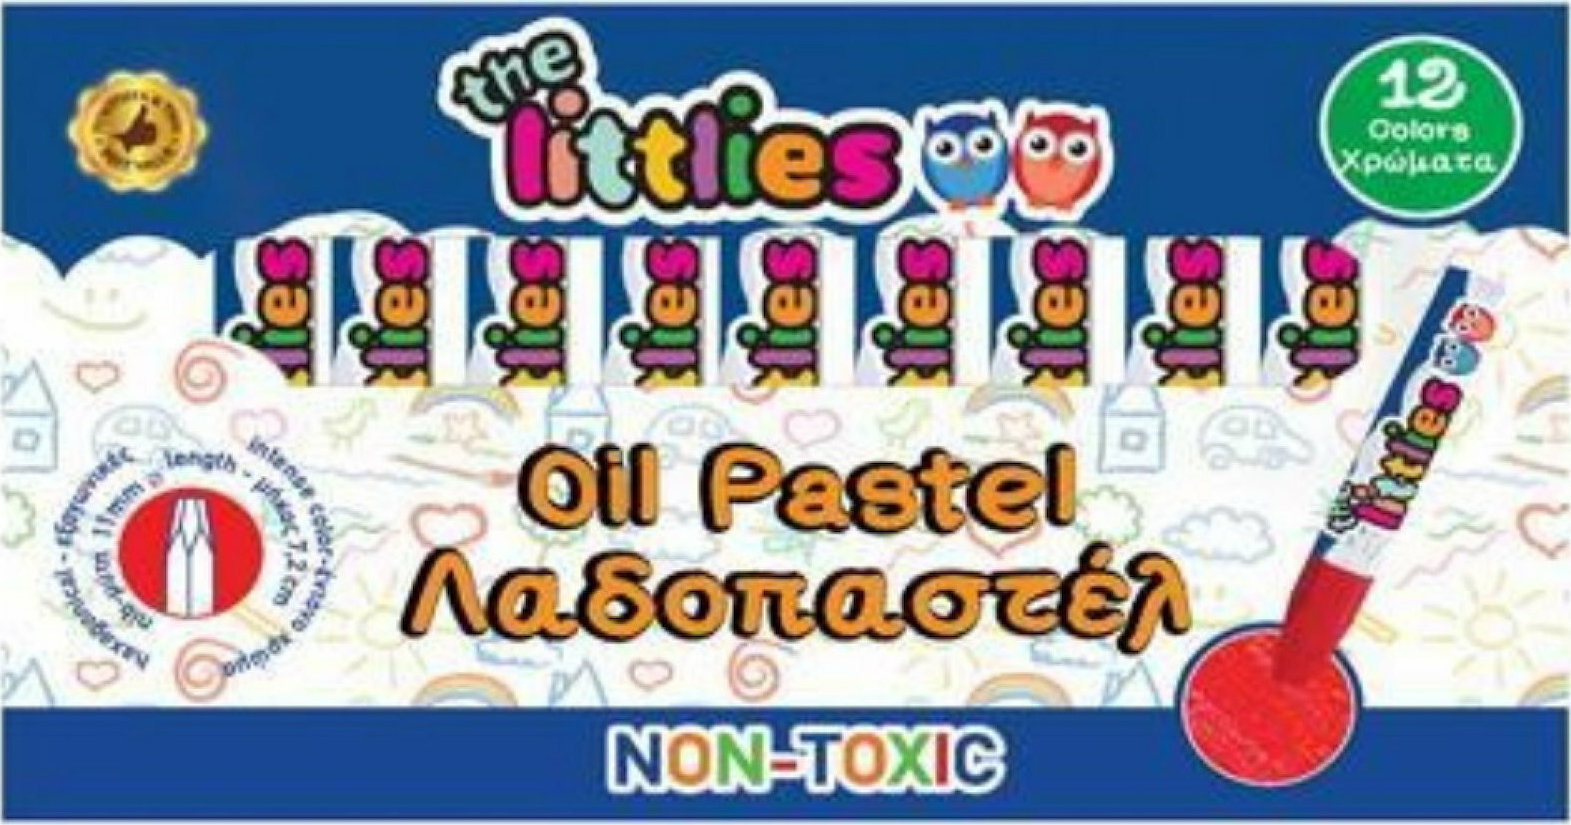 The Littlies- Non toxic Oil Pastel